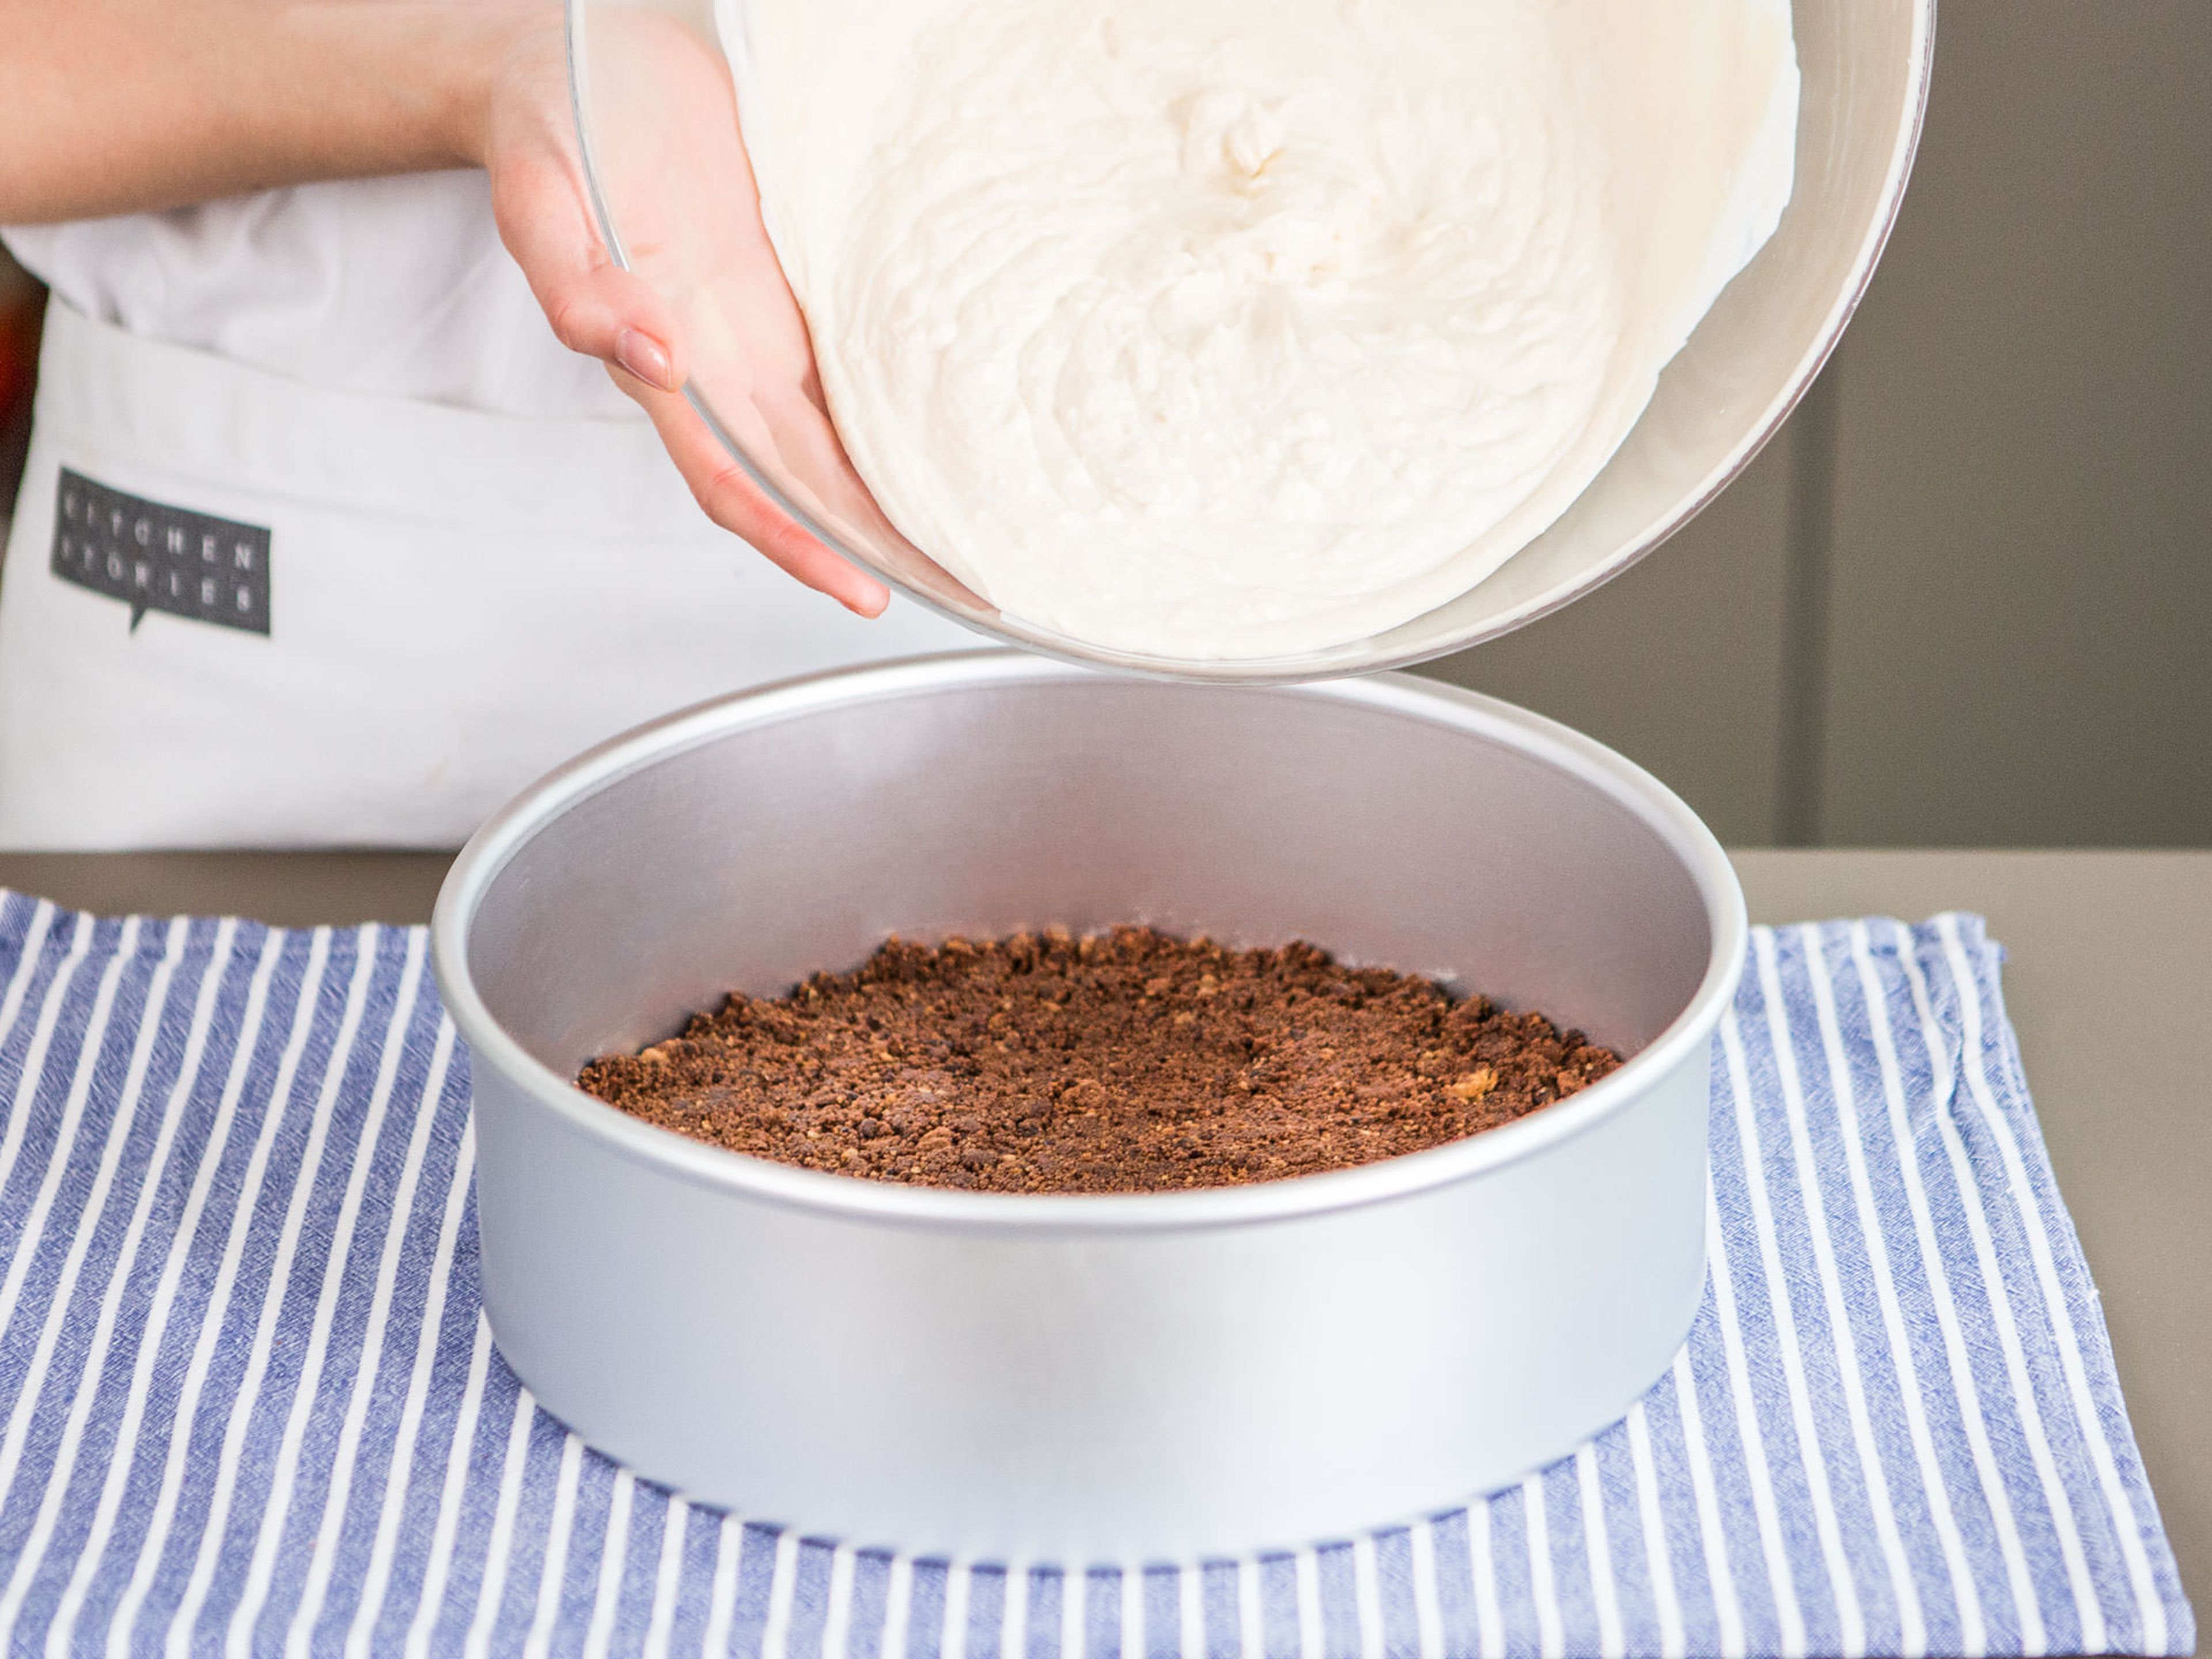 Cookiebrösel in eine runde Backform geben und sorgfältig und fest andrücken, um den Kuchenboden zu formen. Für ca 10 - 15 Min. kalt stellen. Währenddessen Joghurt, Frischkäse und Baileys in einer großen Schüssel mixen. Die Gelatine aufkochen und mit braunem Zucker verrühren. Unter die Frischkäse-Masse heben. Kuchenboden aus dem Kühlschrank nehmen und Joghurt-Frischkäse-Masse hinzugeben. Die Form vorsichtig auf die Arbeitsfläche klopfen um Luftbläschen freizugeben. Ca. 3 - 4 Stunden im Kühlschrank ruhen lassen.